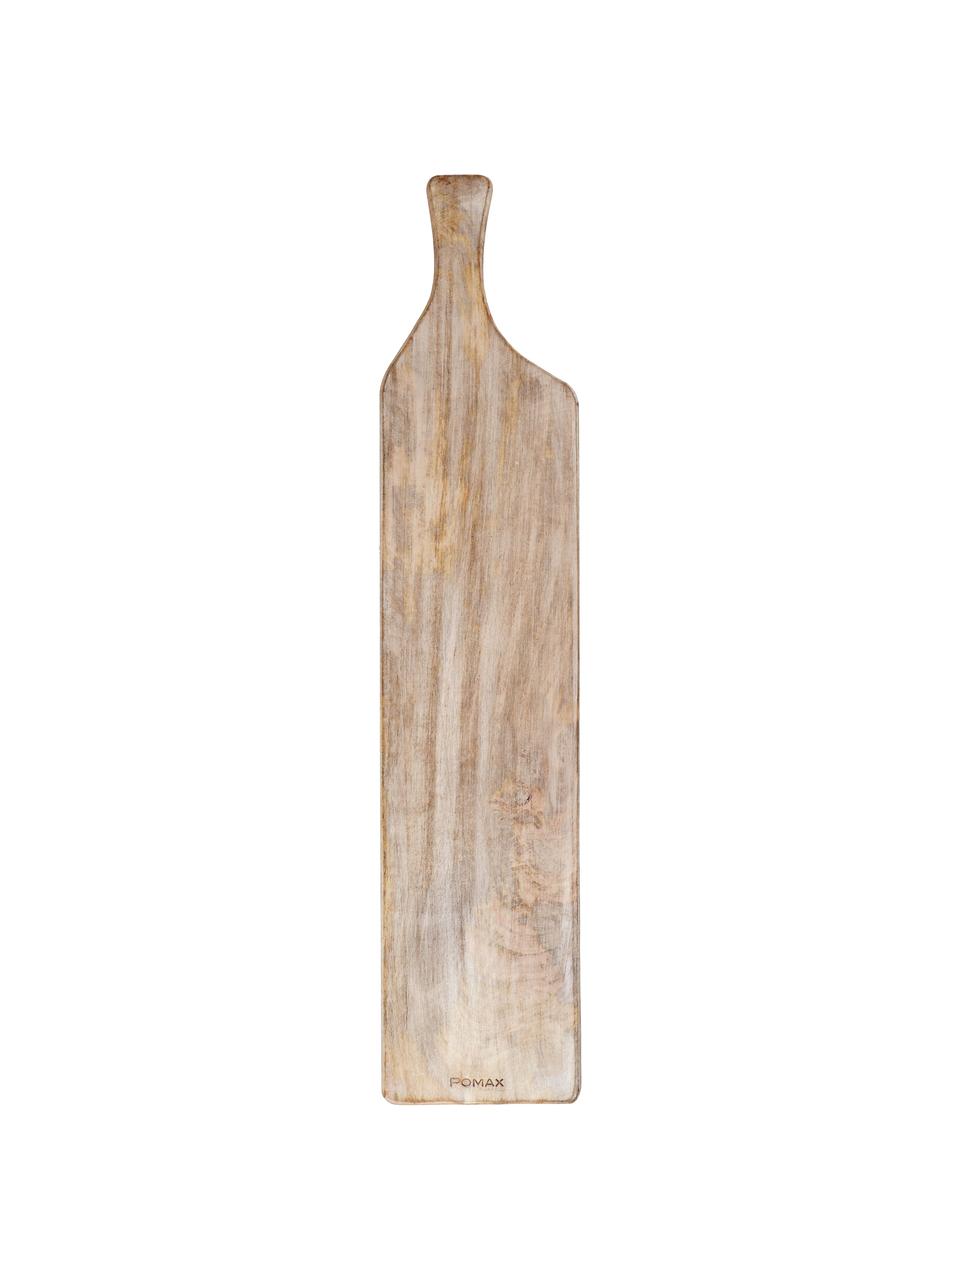 Tabla de cortar de madera de mango Limitless, Marrón oscuro, Marrón oscuro, L 70 x An 15 cm